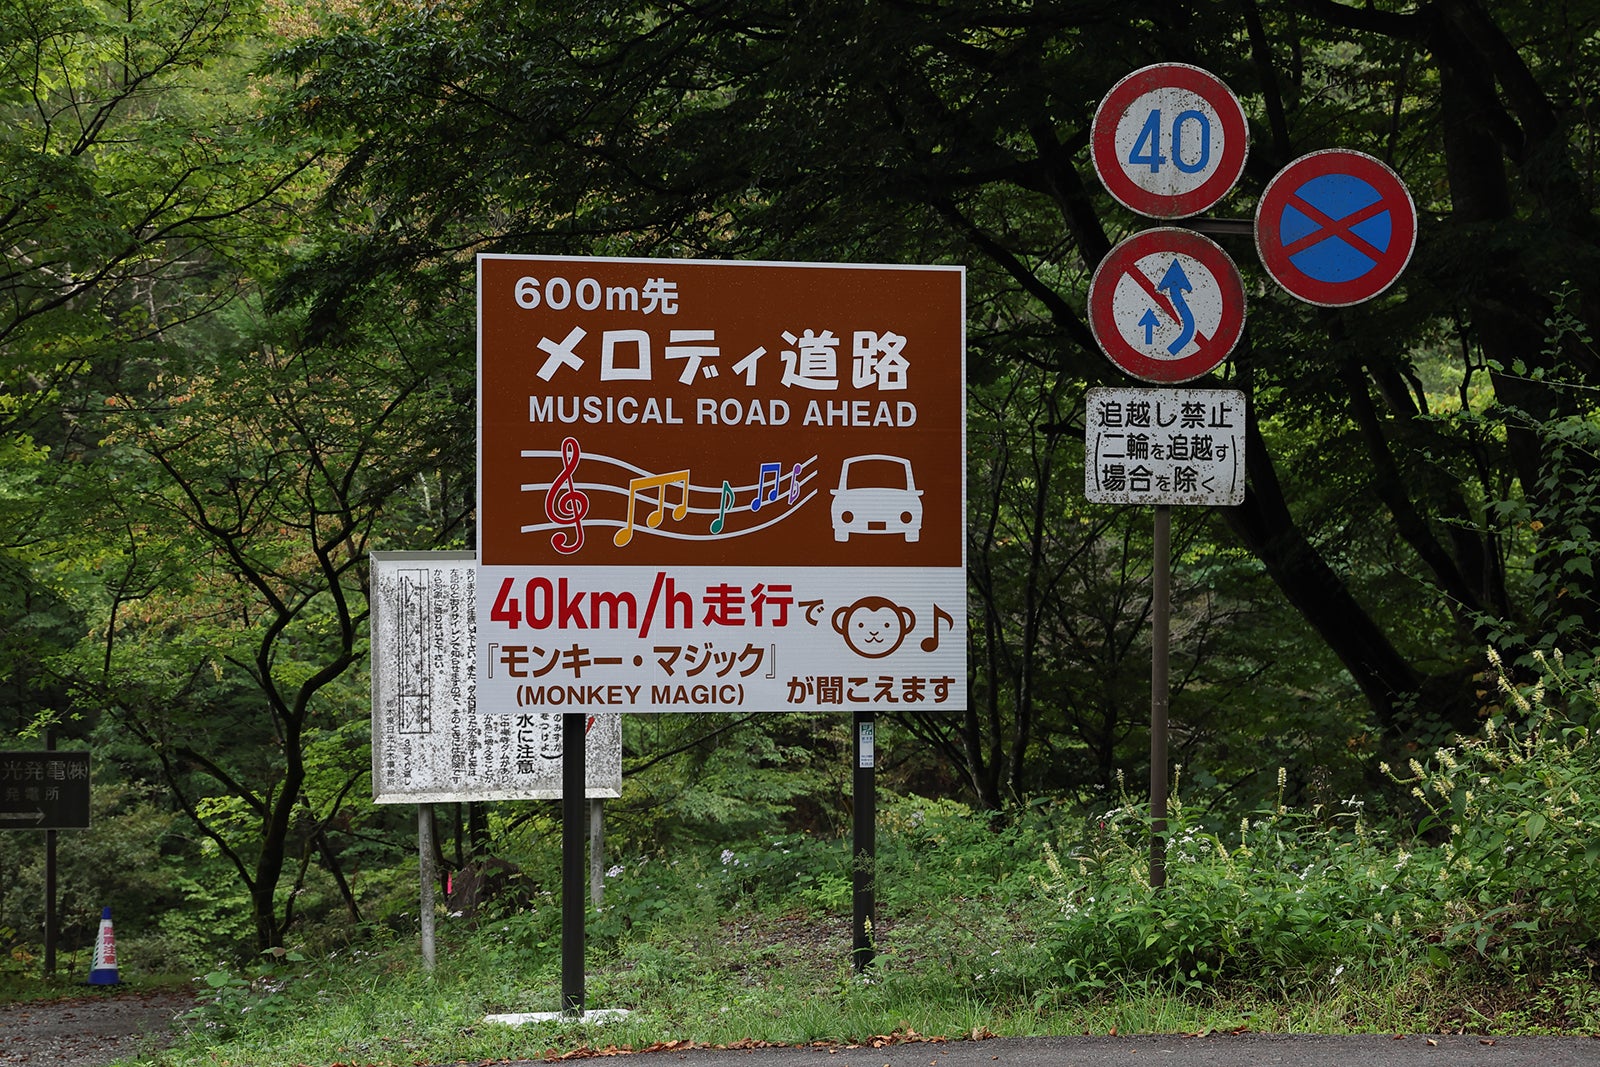 栃木県初の音響道路は「メロディ道路」と表記。曲は1979年の大ヒット曲、ゴダイゴの「モンキー・マジック」。